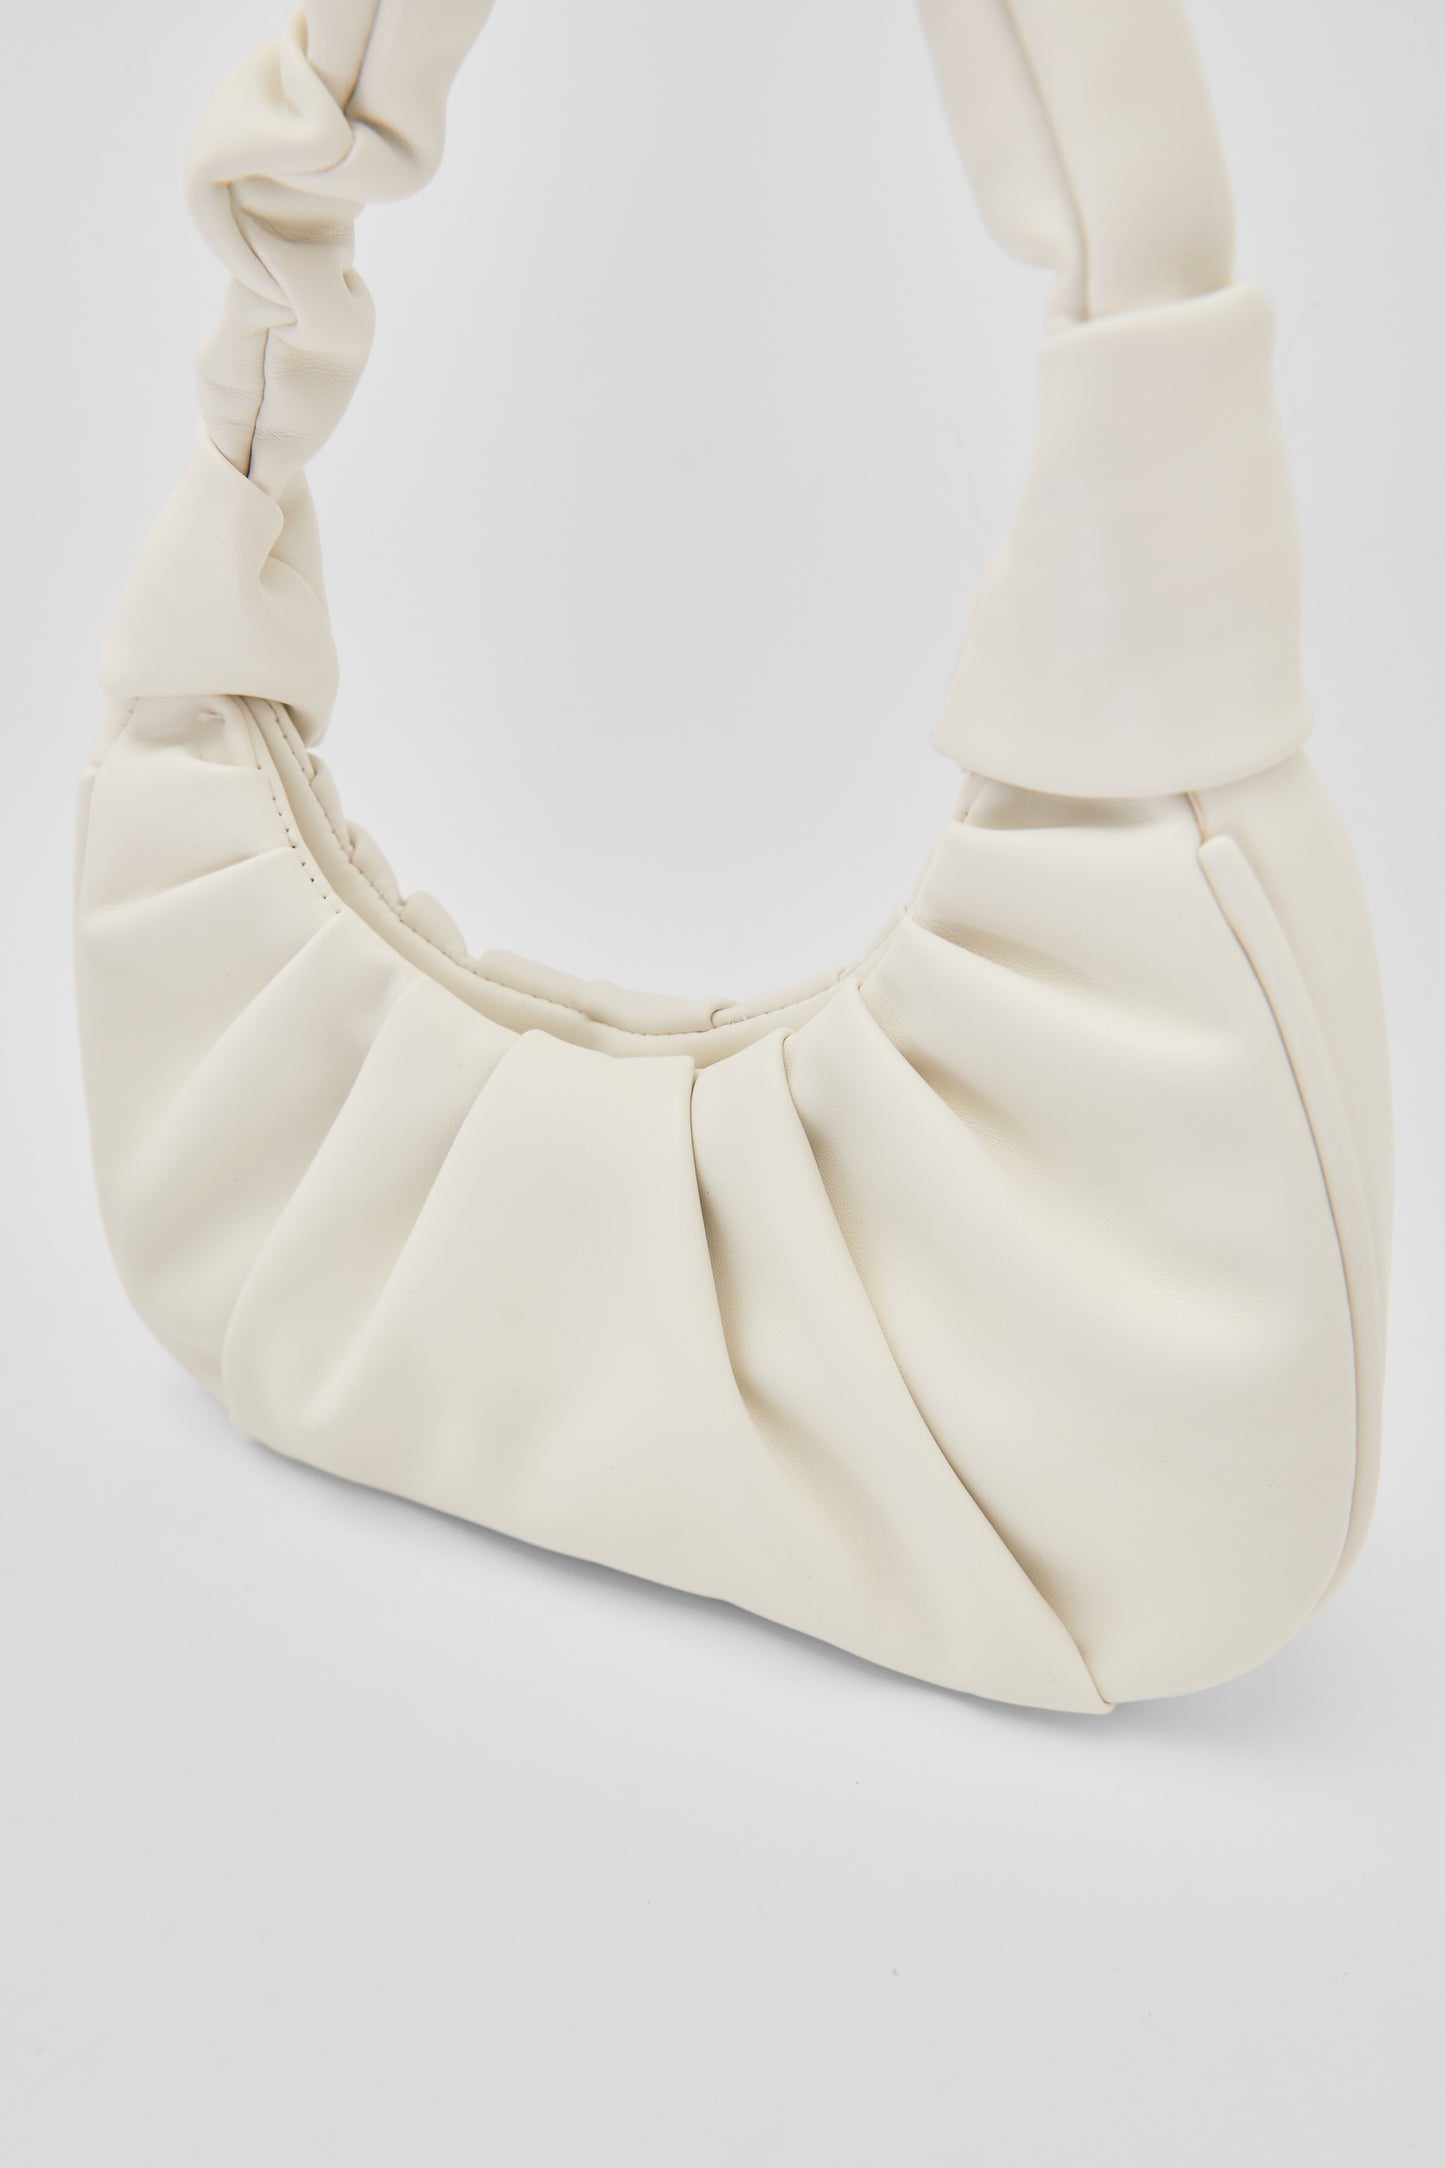 Ruched Mini Shoulder Bag, White